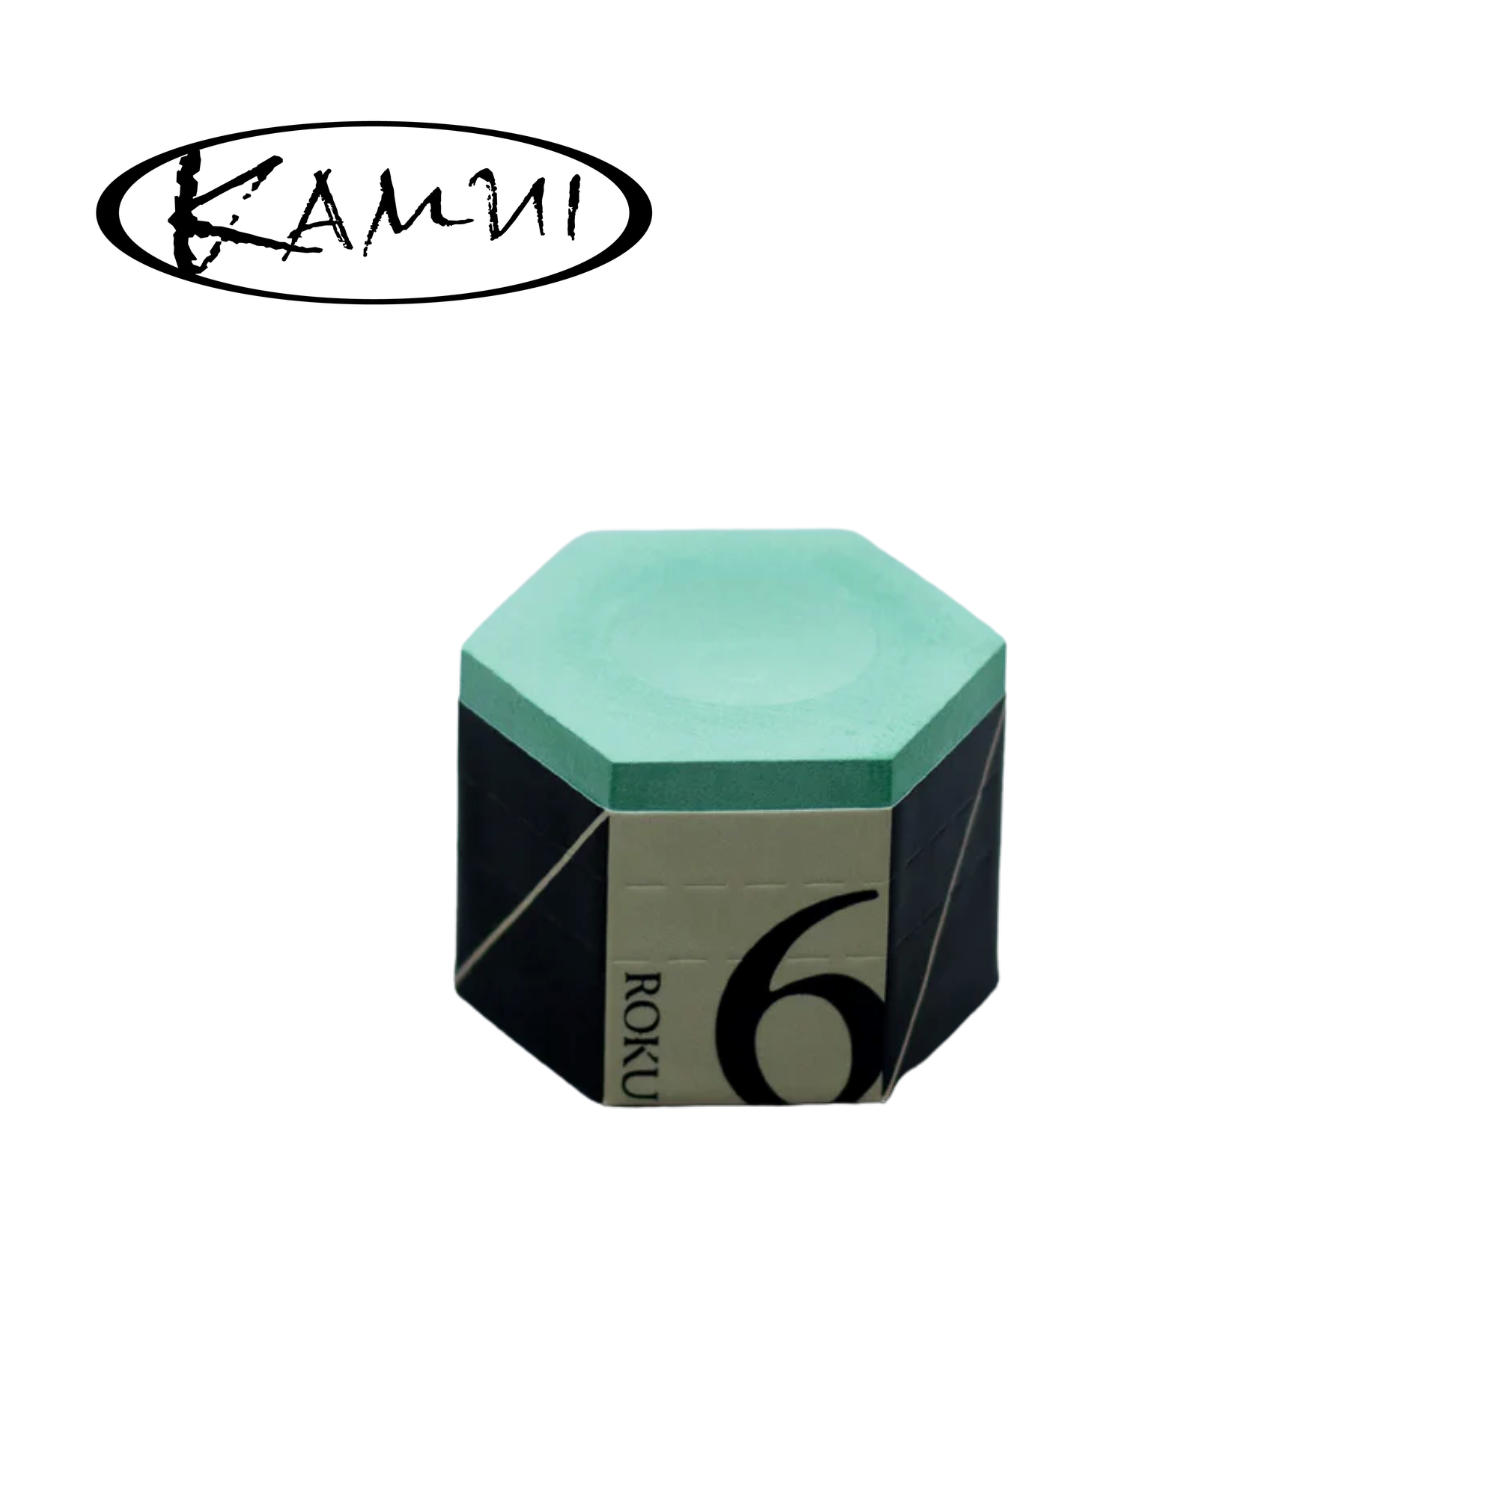 Kamui 1.21 Pool Chalk - 1 Cube